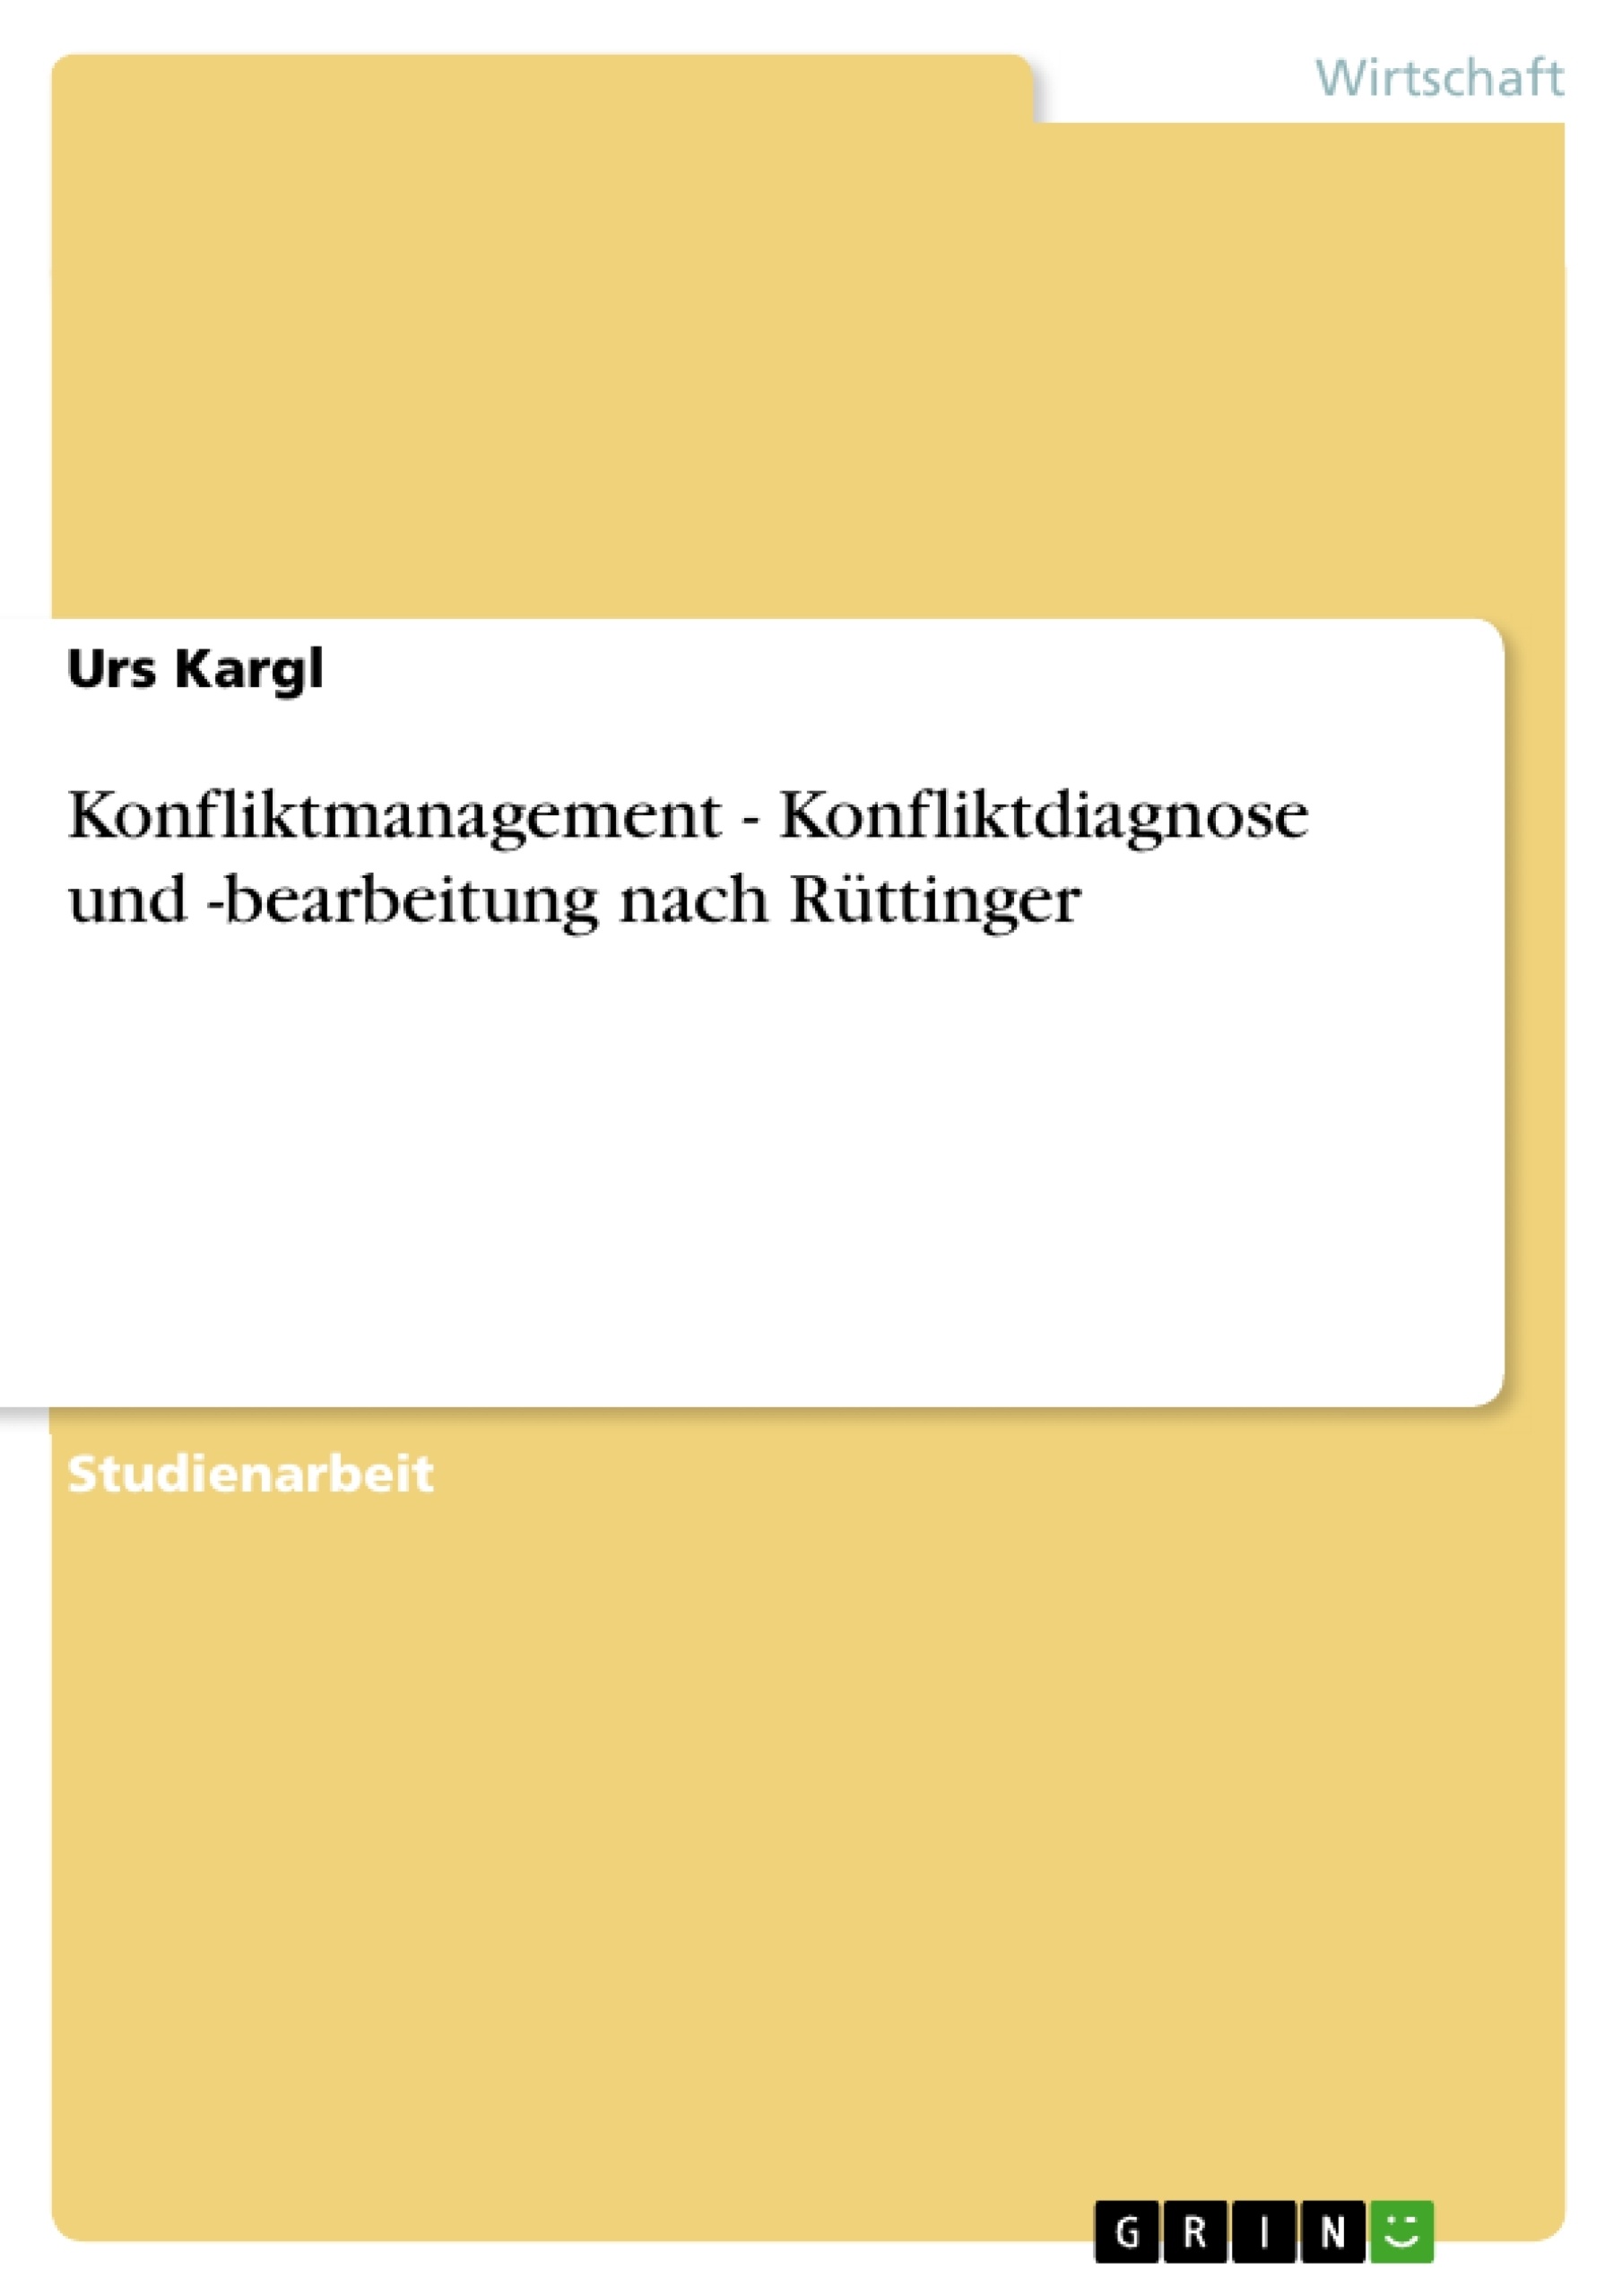 Title: Konfliktmanagement - Konfliktdiagnose und -bearbeitung nach Rüttinger